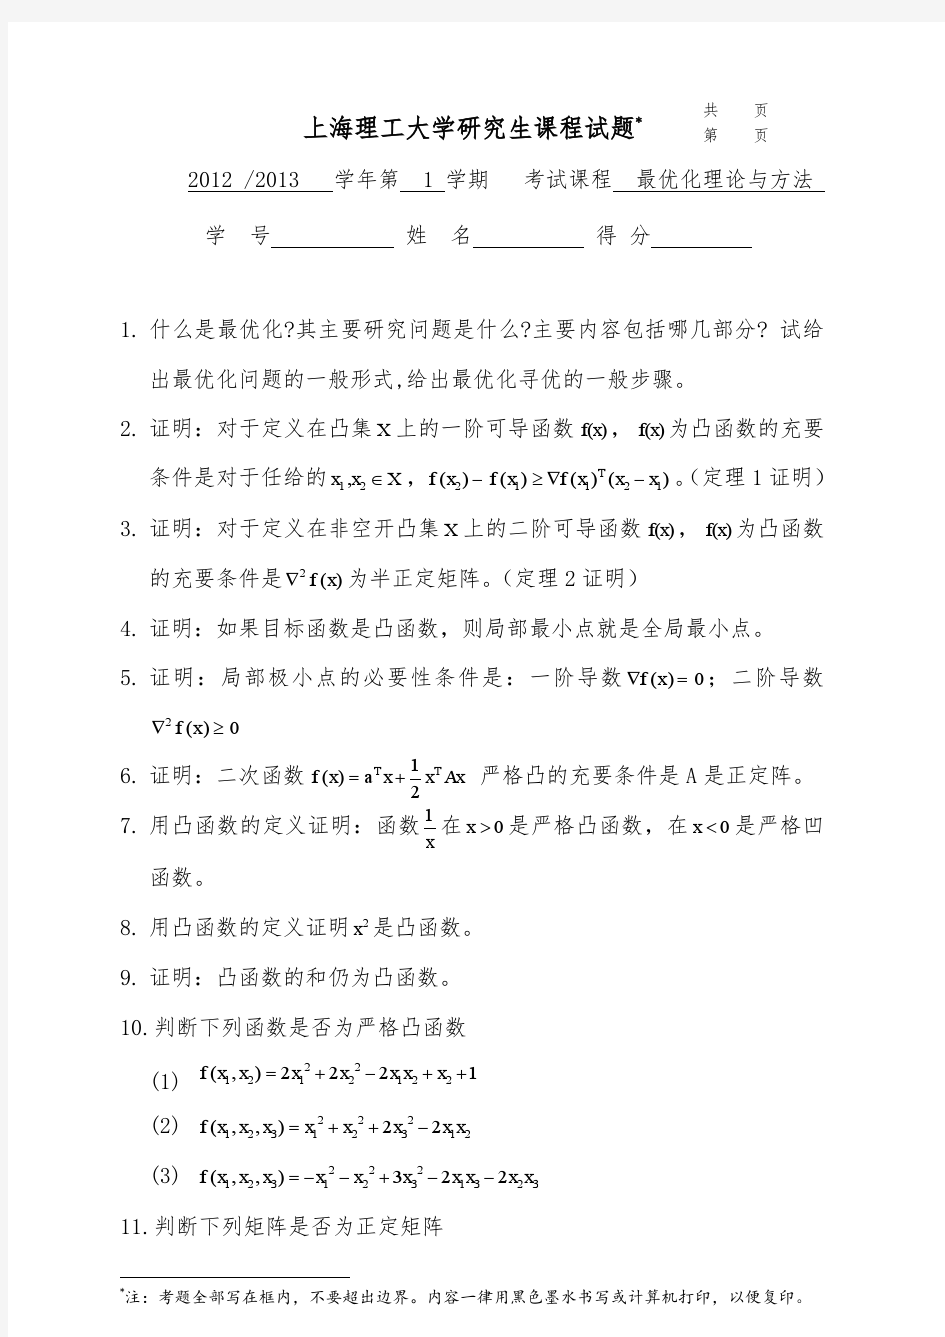 上海理工大学研究生课程(试题类)试卷 (题库)